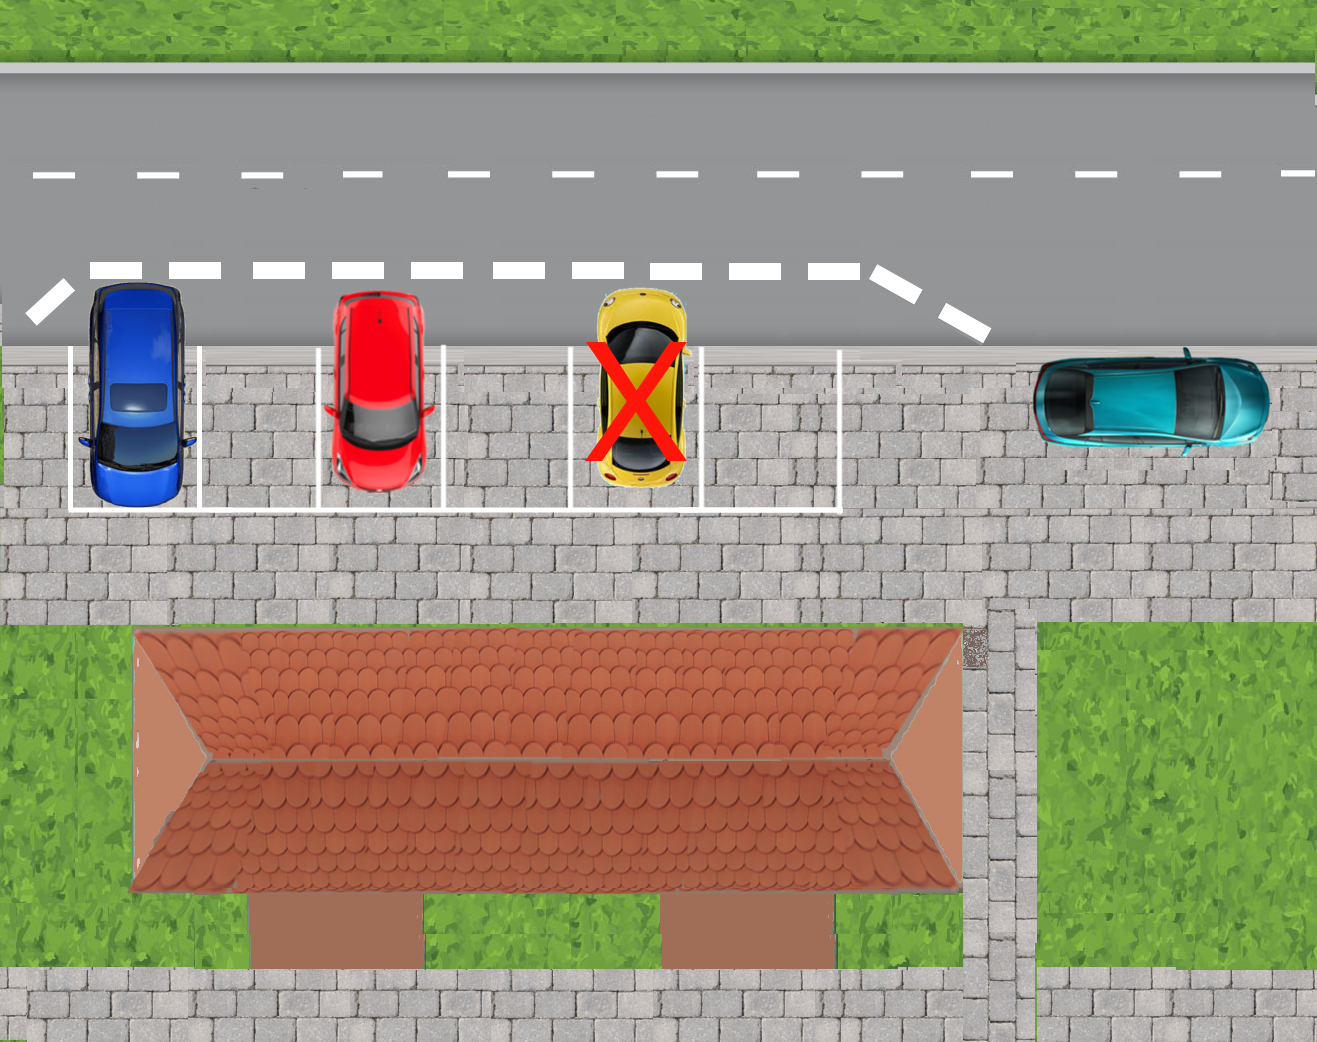 Zakaz parkowania tyłem do budynku – czy należy go przestrzegać?